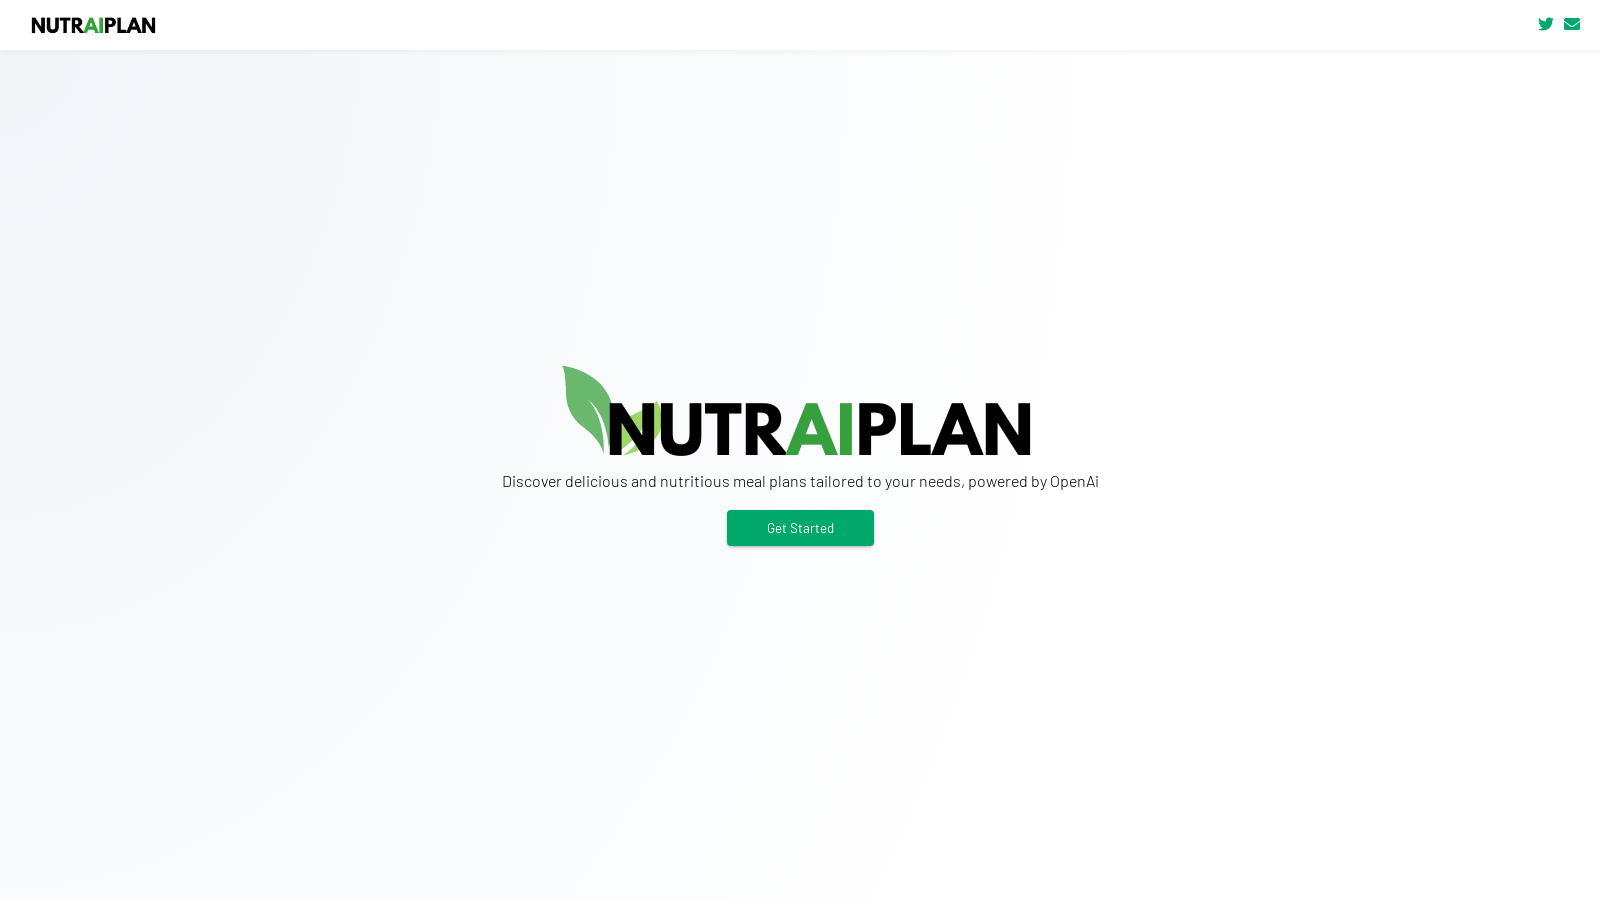 nutraiplan.com